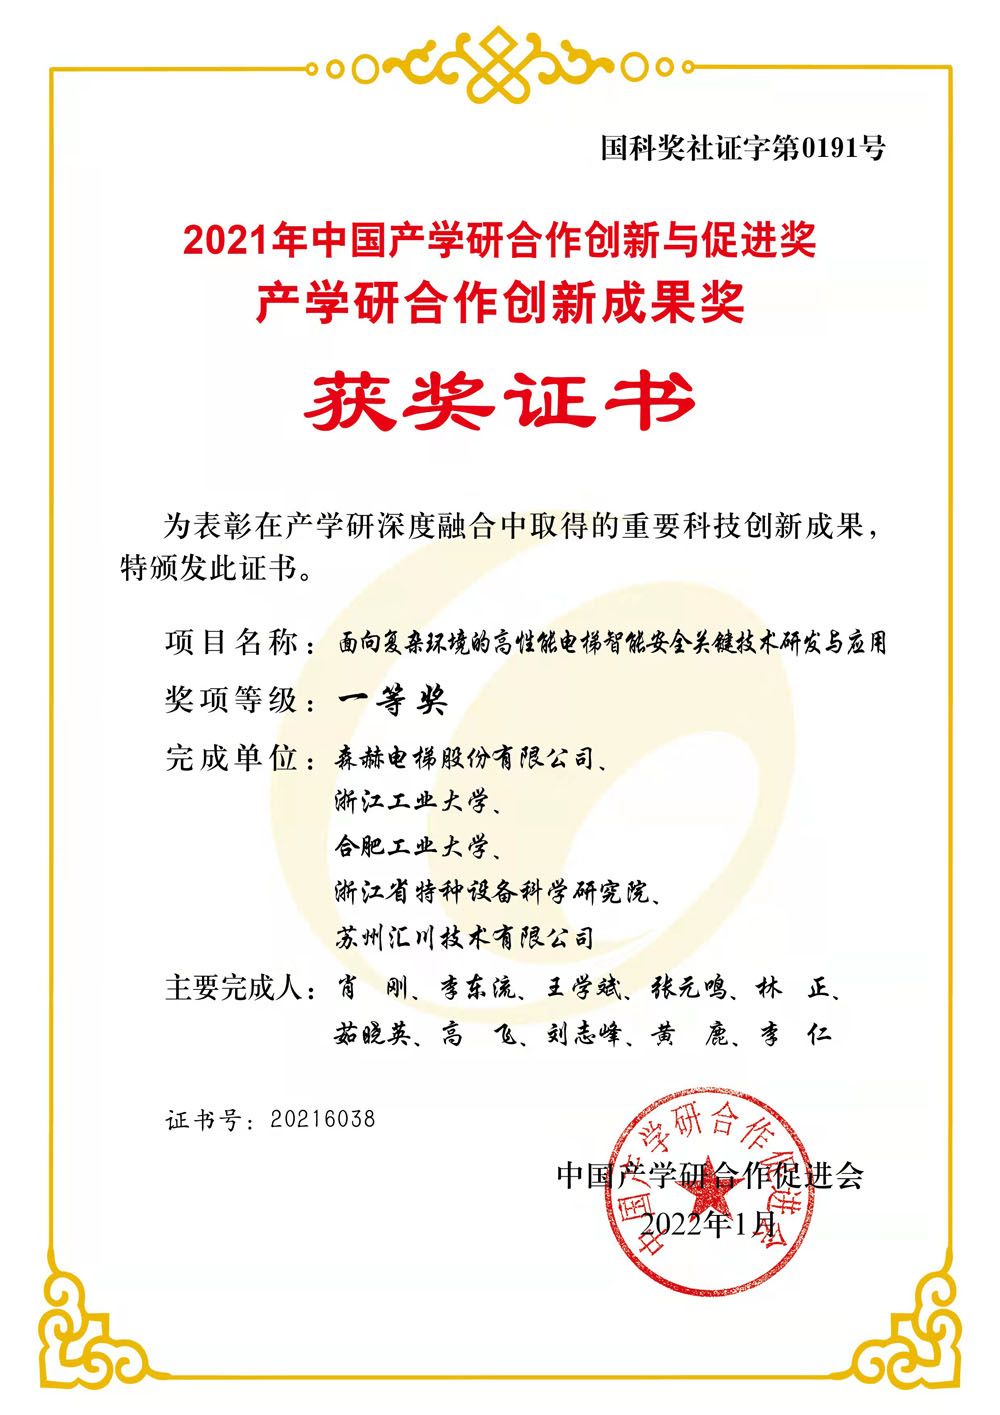 森赫电梯荣获2021年中国产学研合作创新成果一等奖